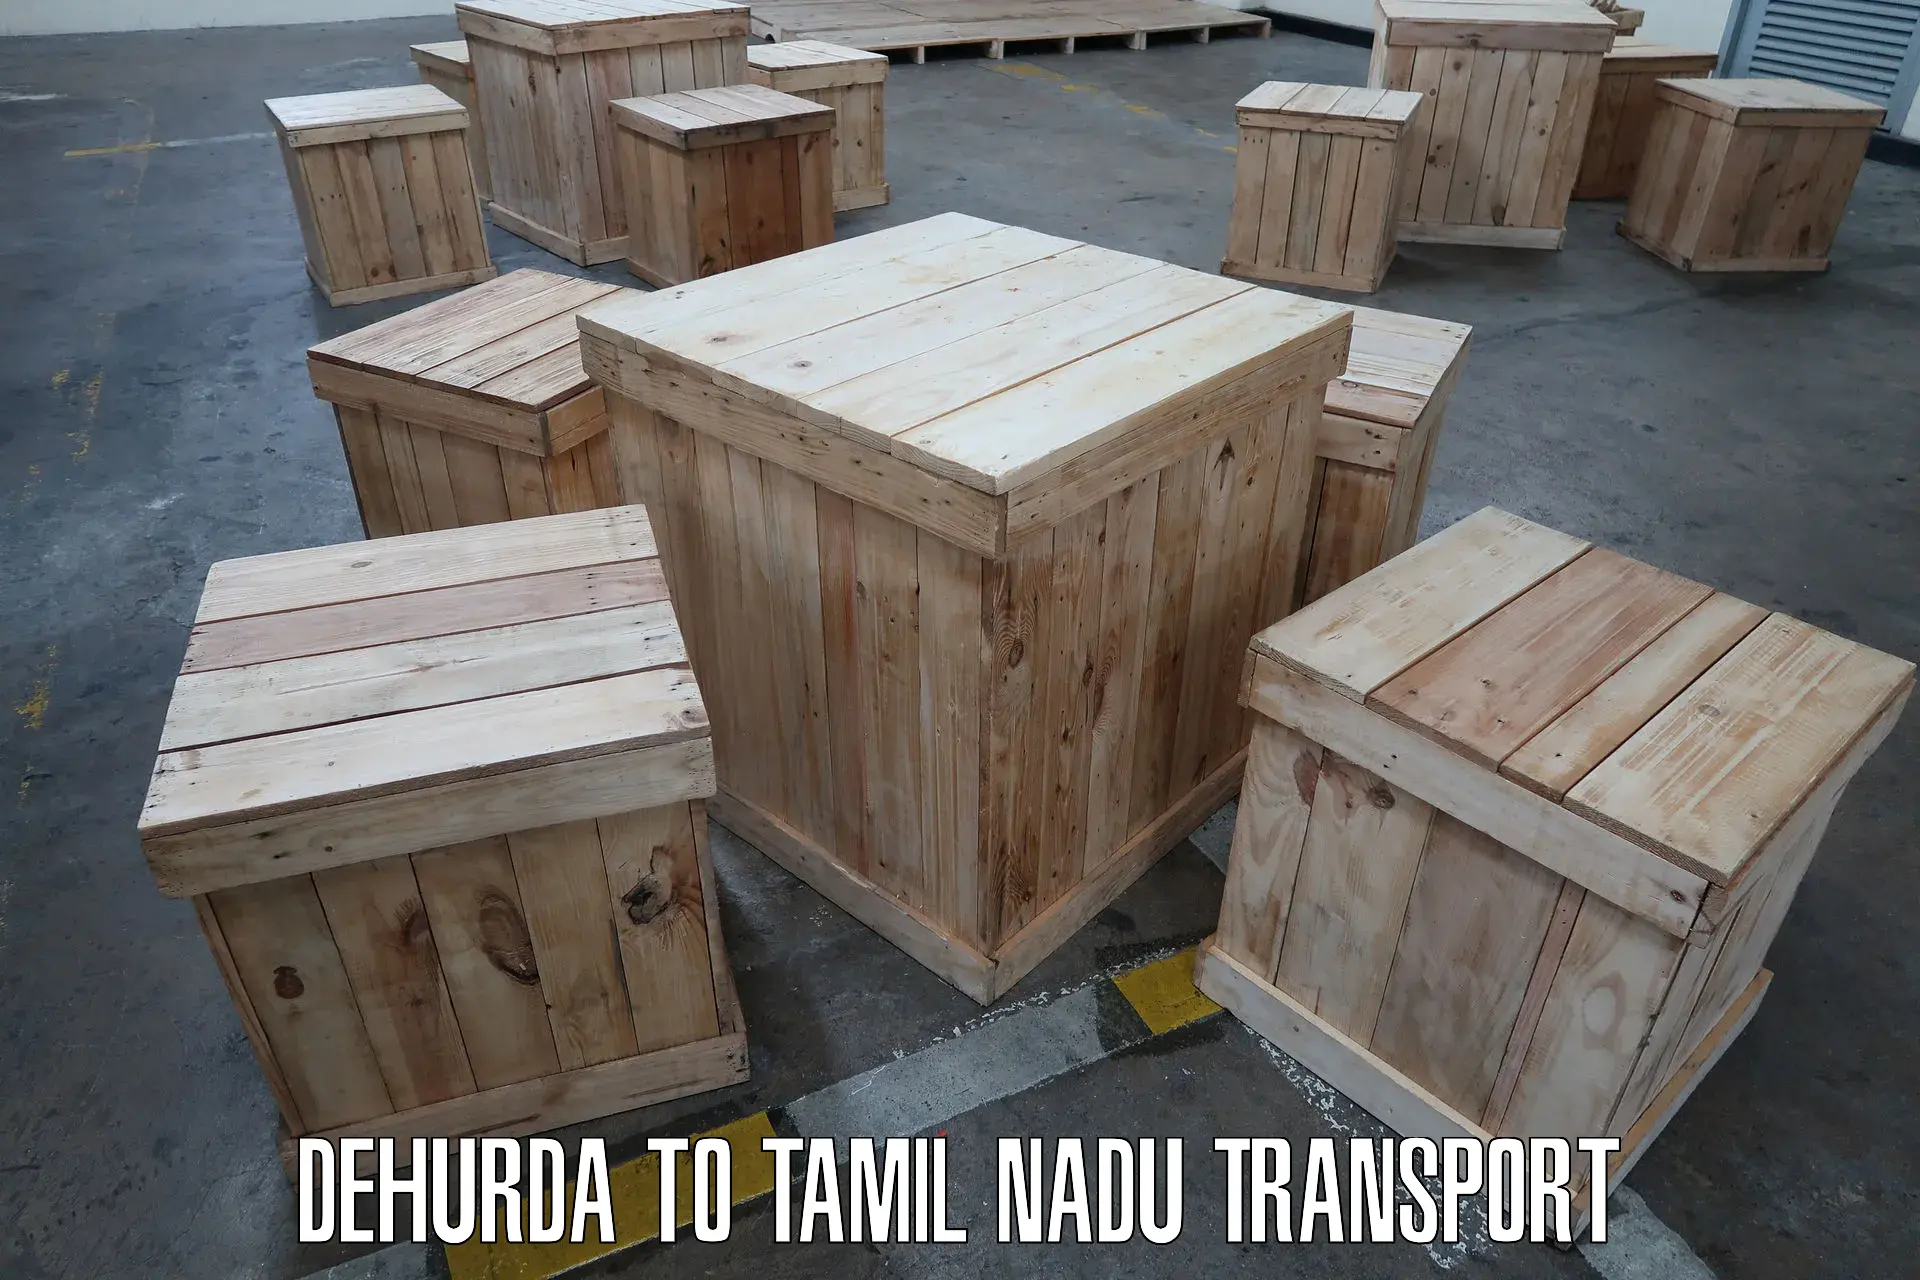 Commercial transport service Dehurda to Papanasam